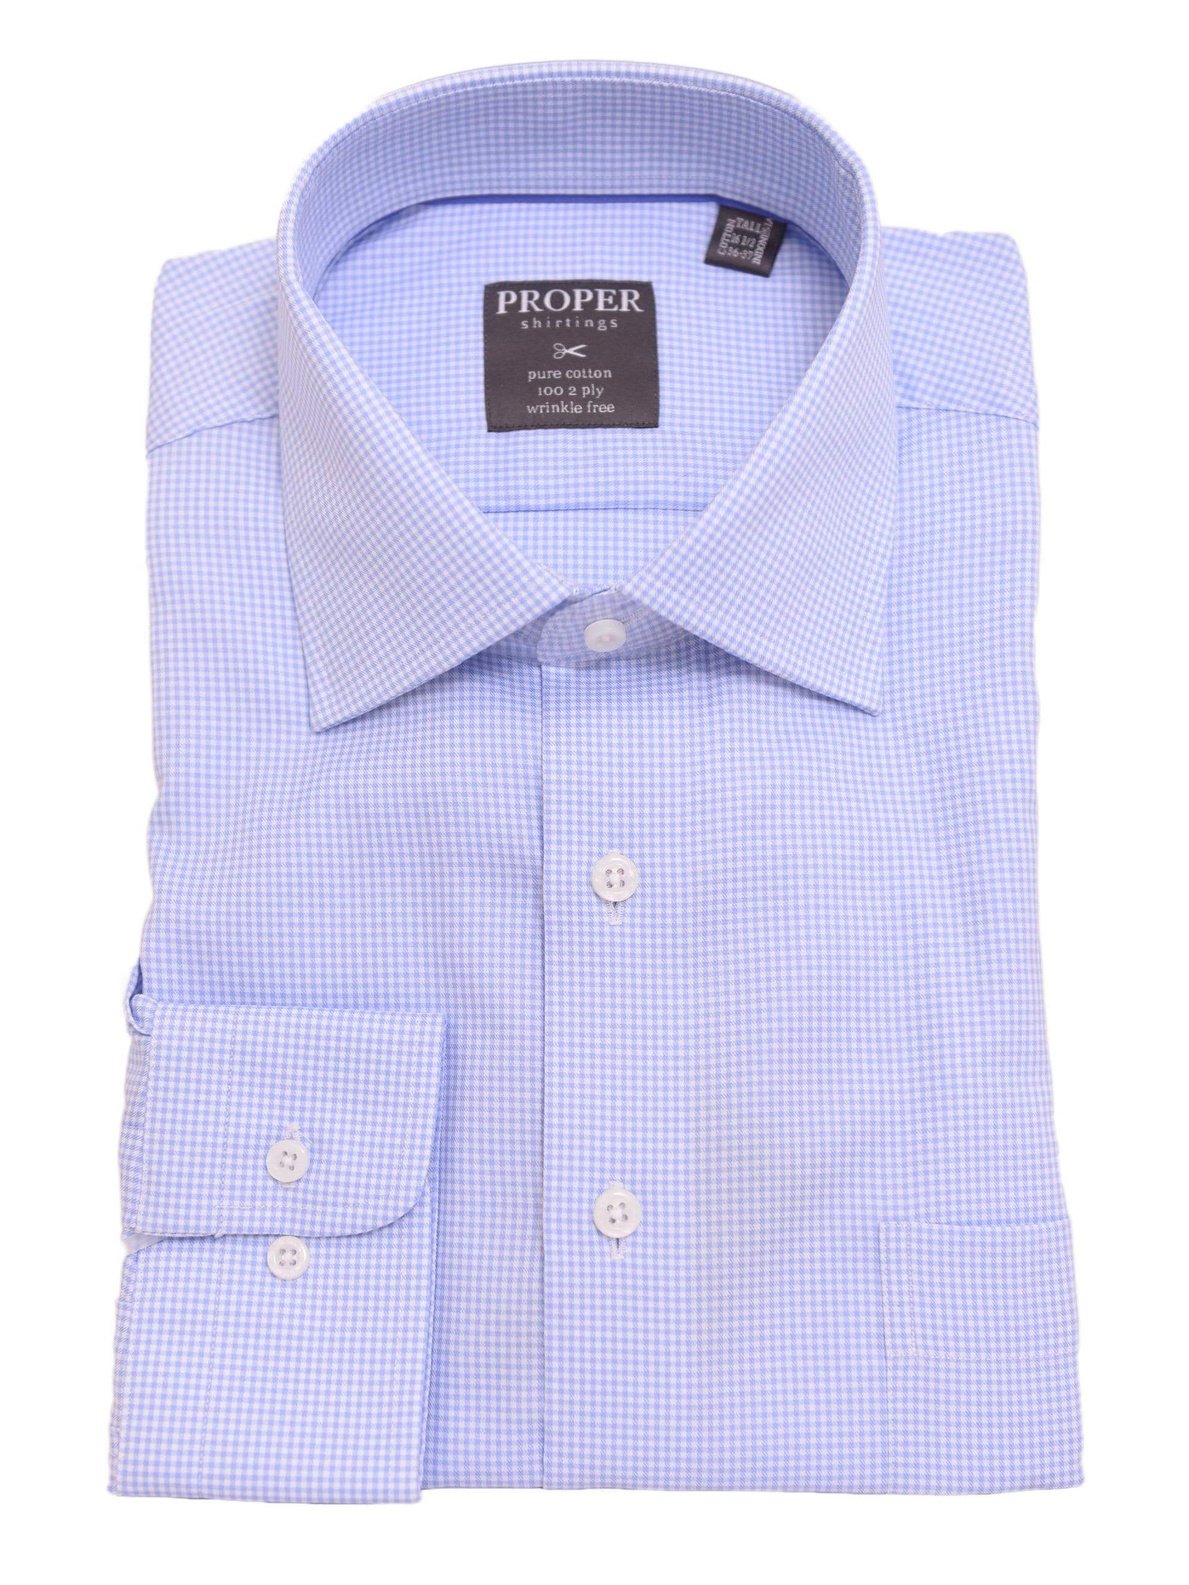 Mens Regular Fit Light Light Blue Checkered Spread Collar Cotton Dress Shirt - The Suit Depot